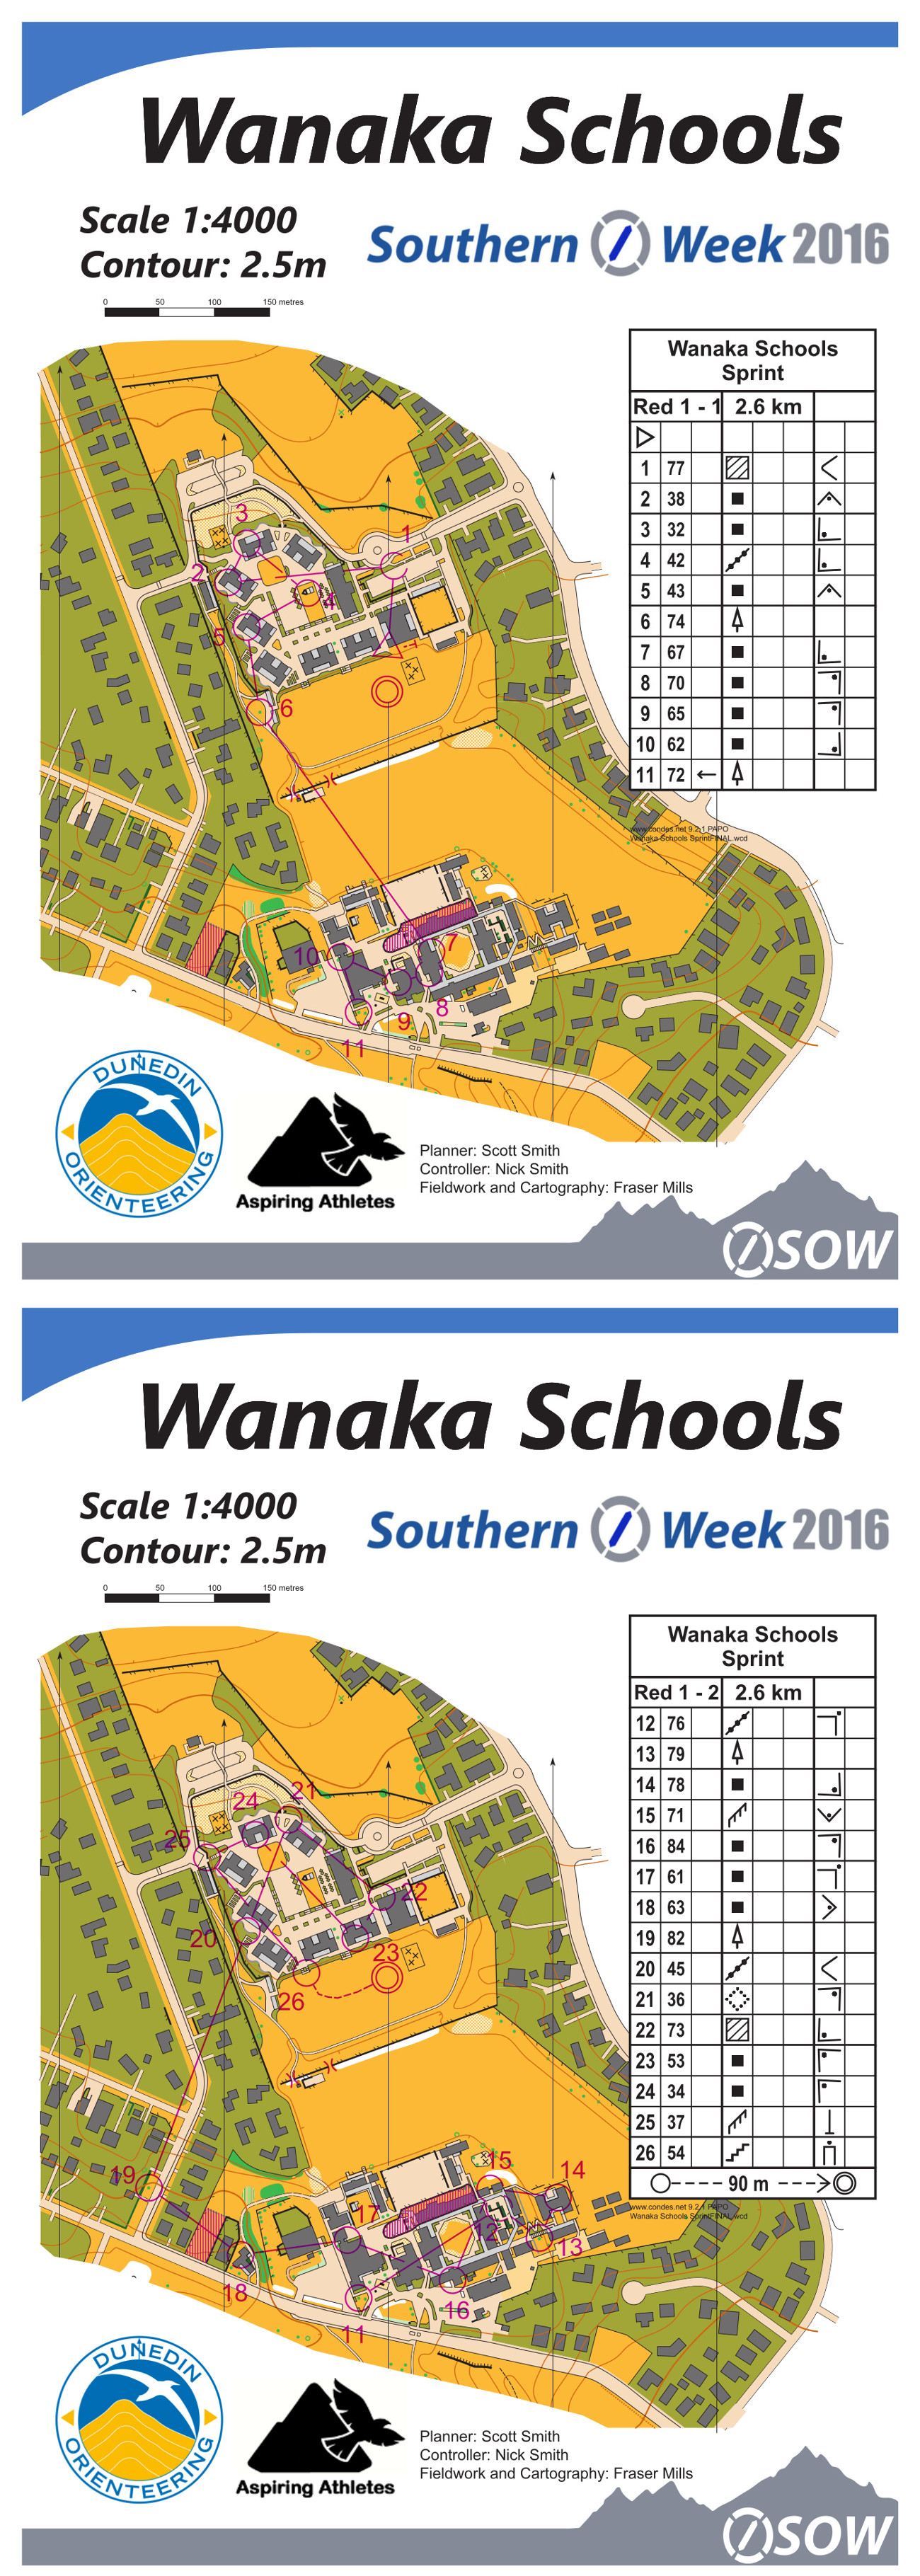 Southern O Week 2016 Day 2 Wanaka Schools (19.01.2016)